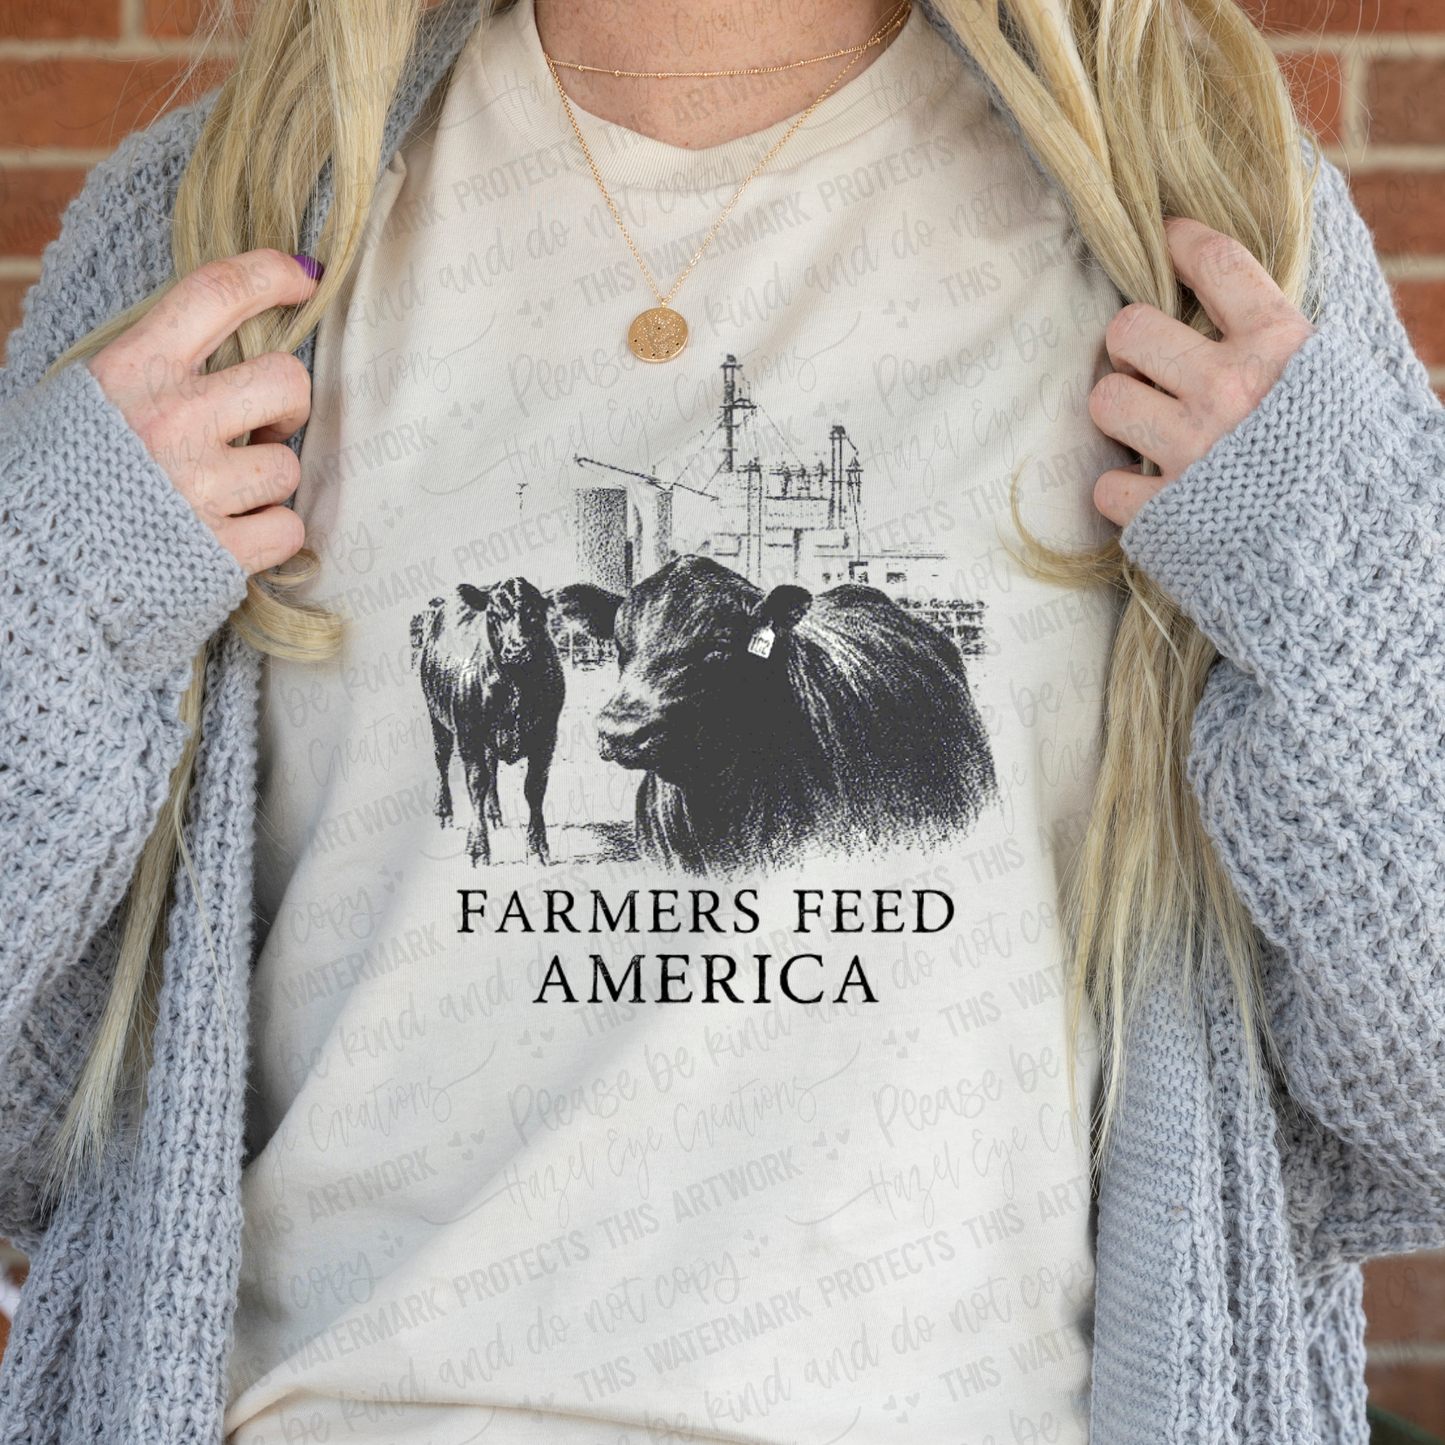 Farmers feed America